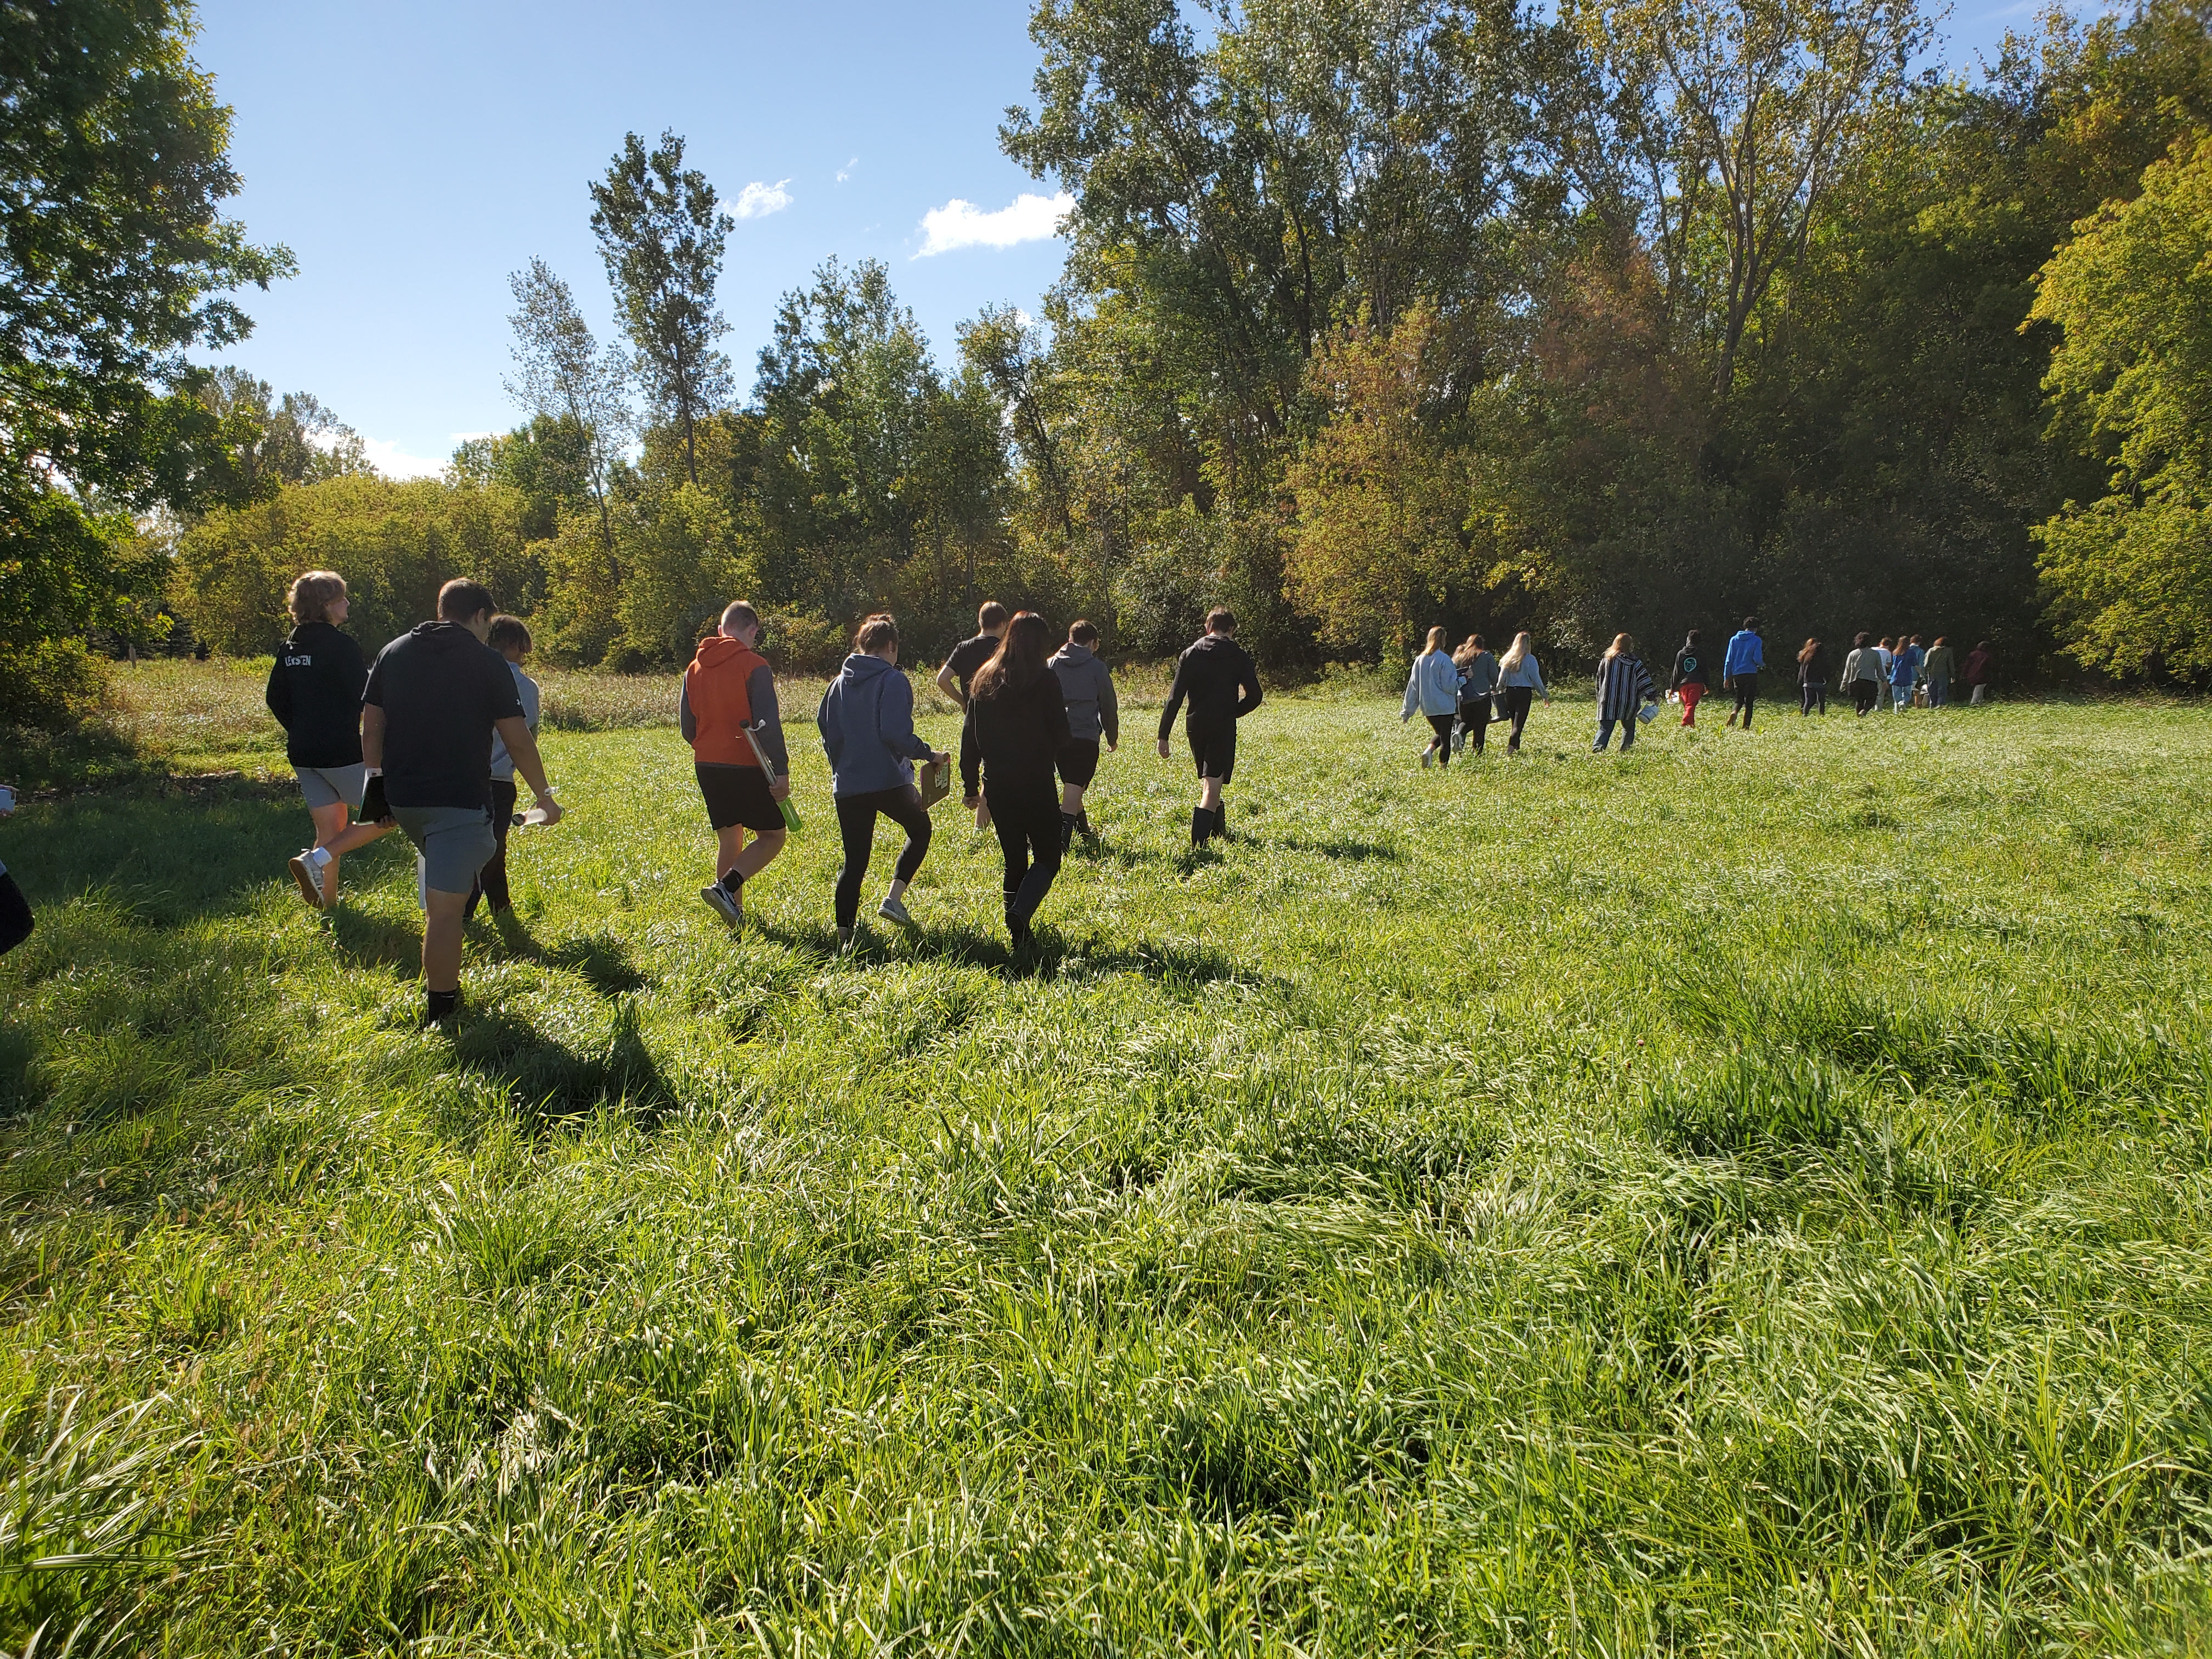 Students walking in a field